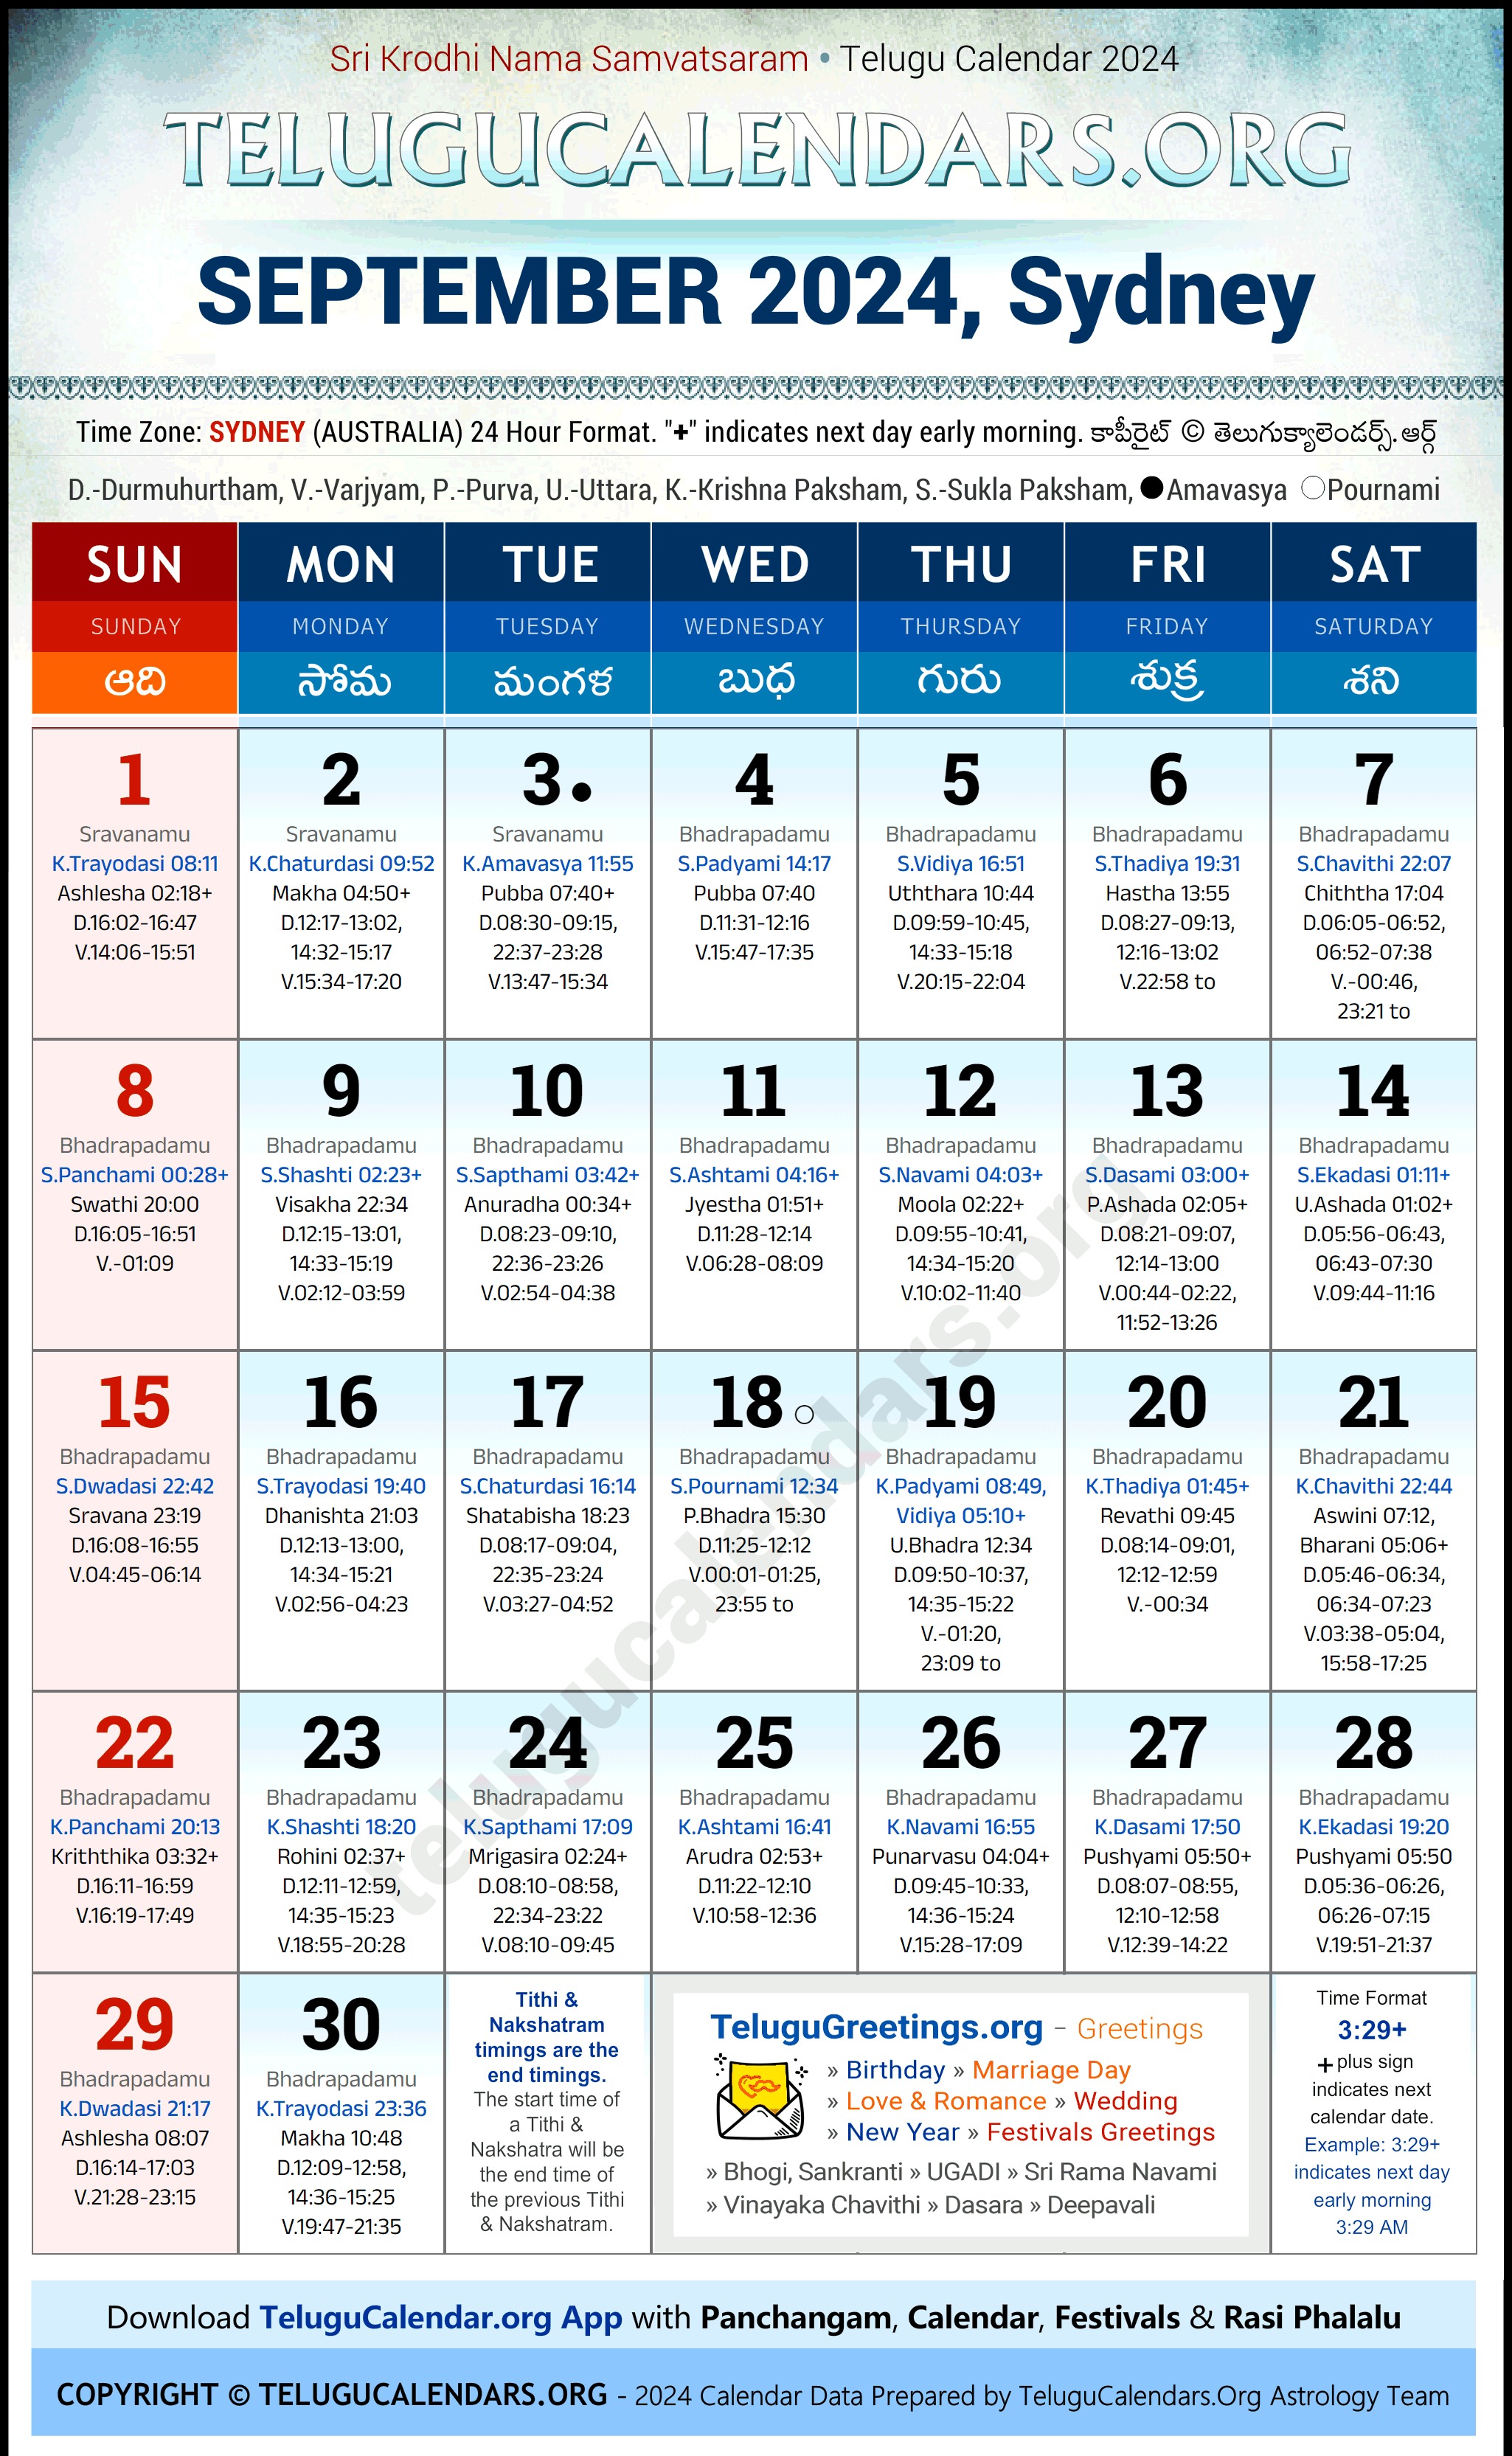 Telugu Calendar 2024 September Festivals for Sydney